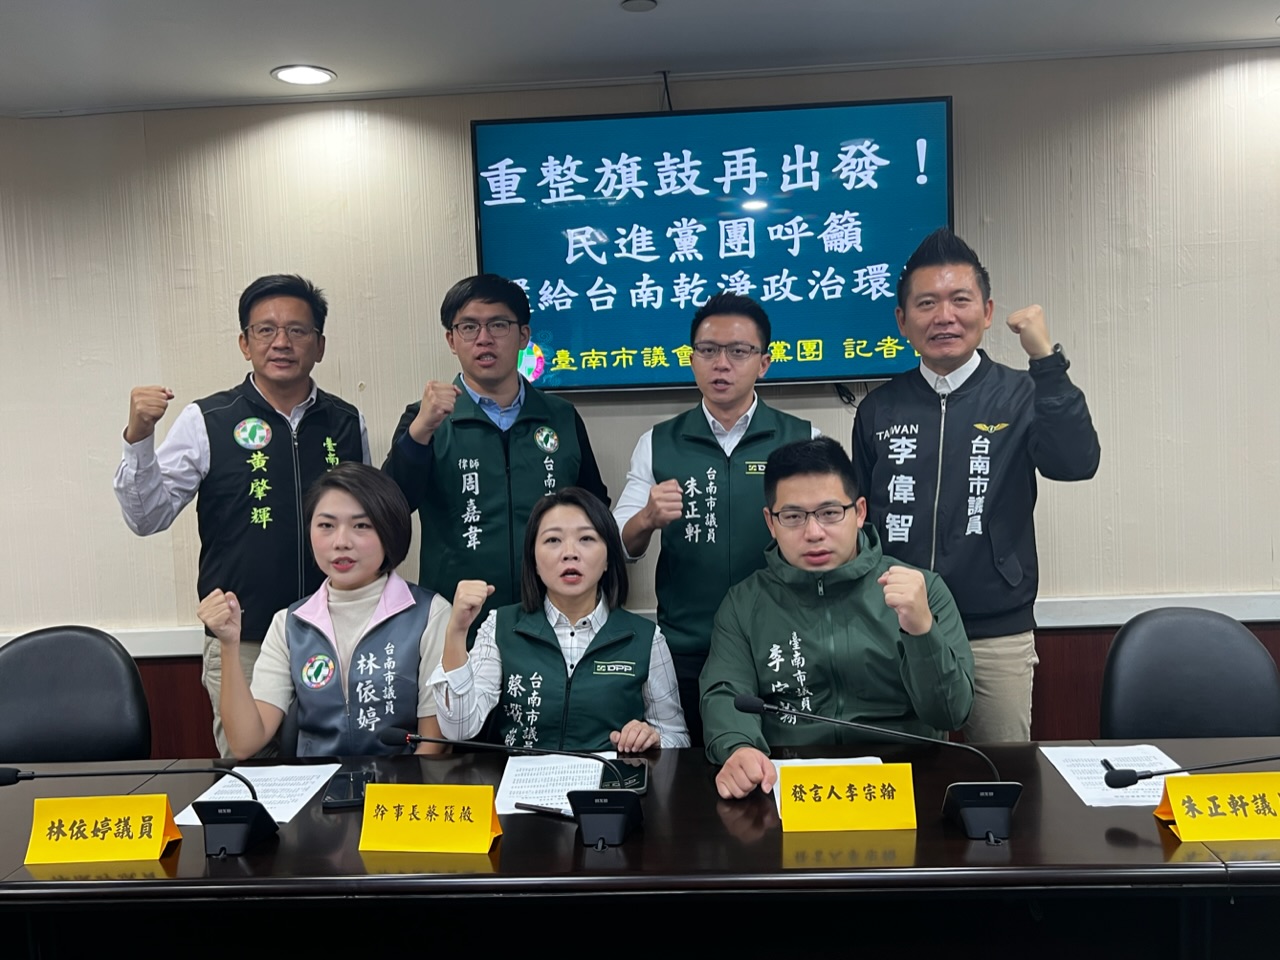 重整旗鼓、重新出發  台南市民進黨團呼籲還給台南乾淨政治環境